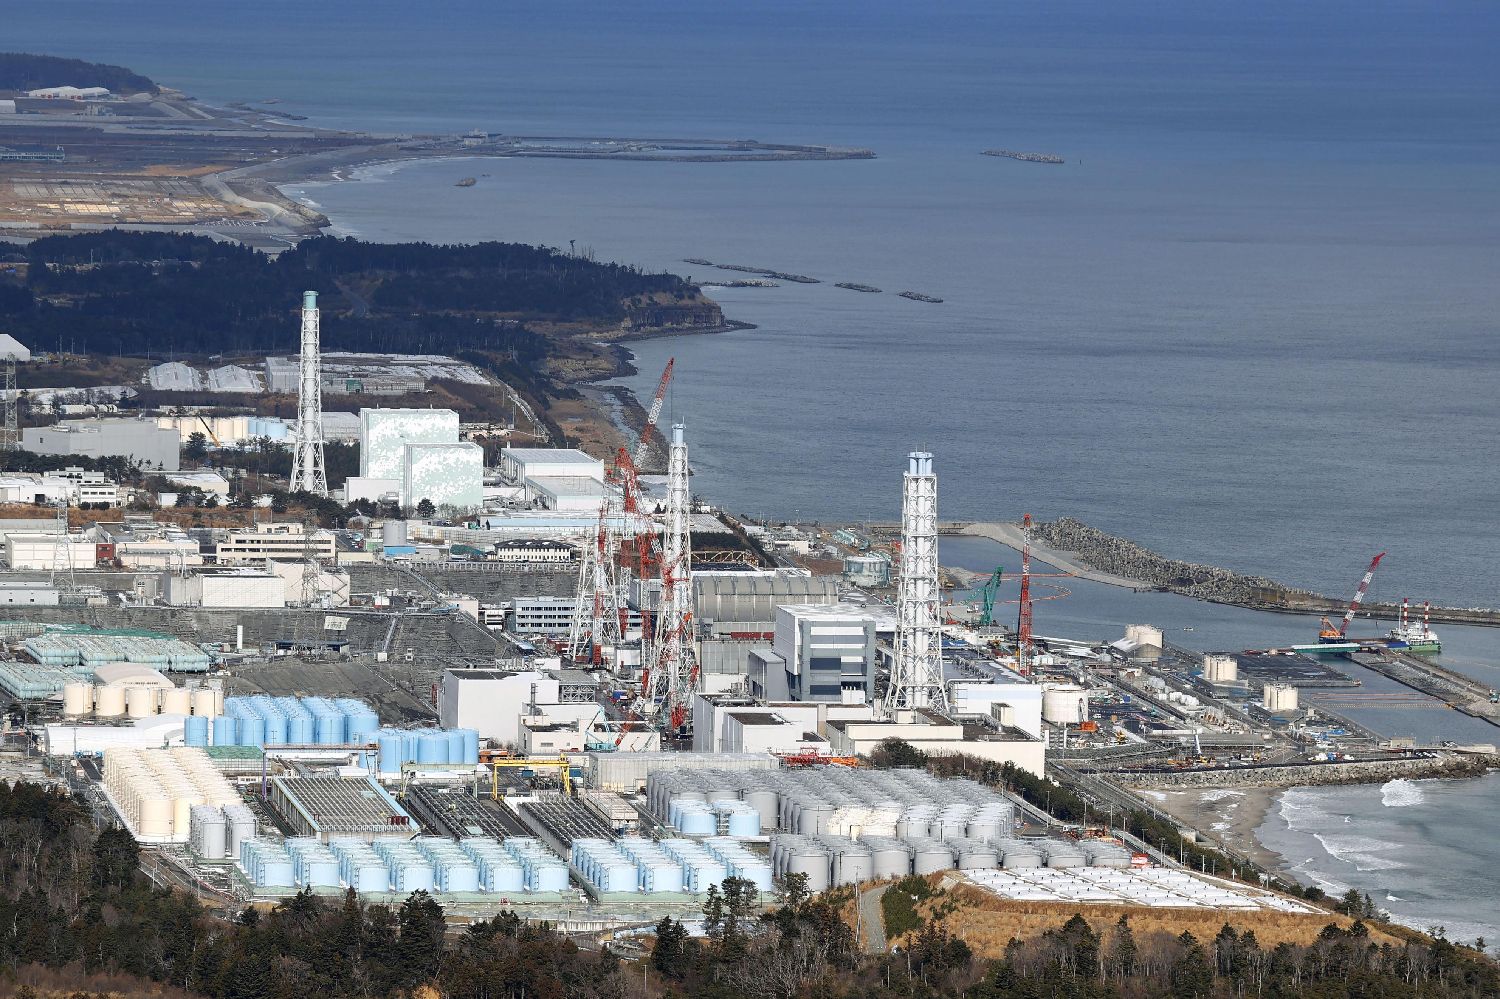 福岛或遭核污染的废铁被工人偷卖换钱 日官员：令人遗憾